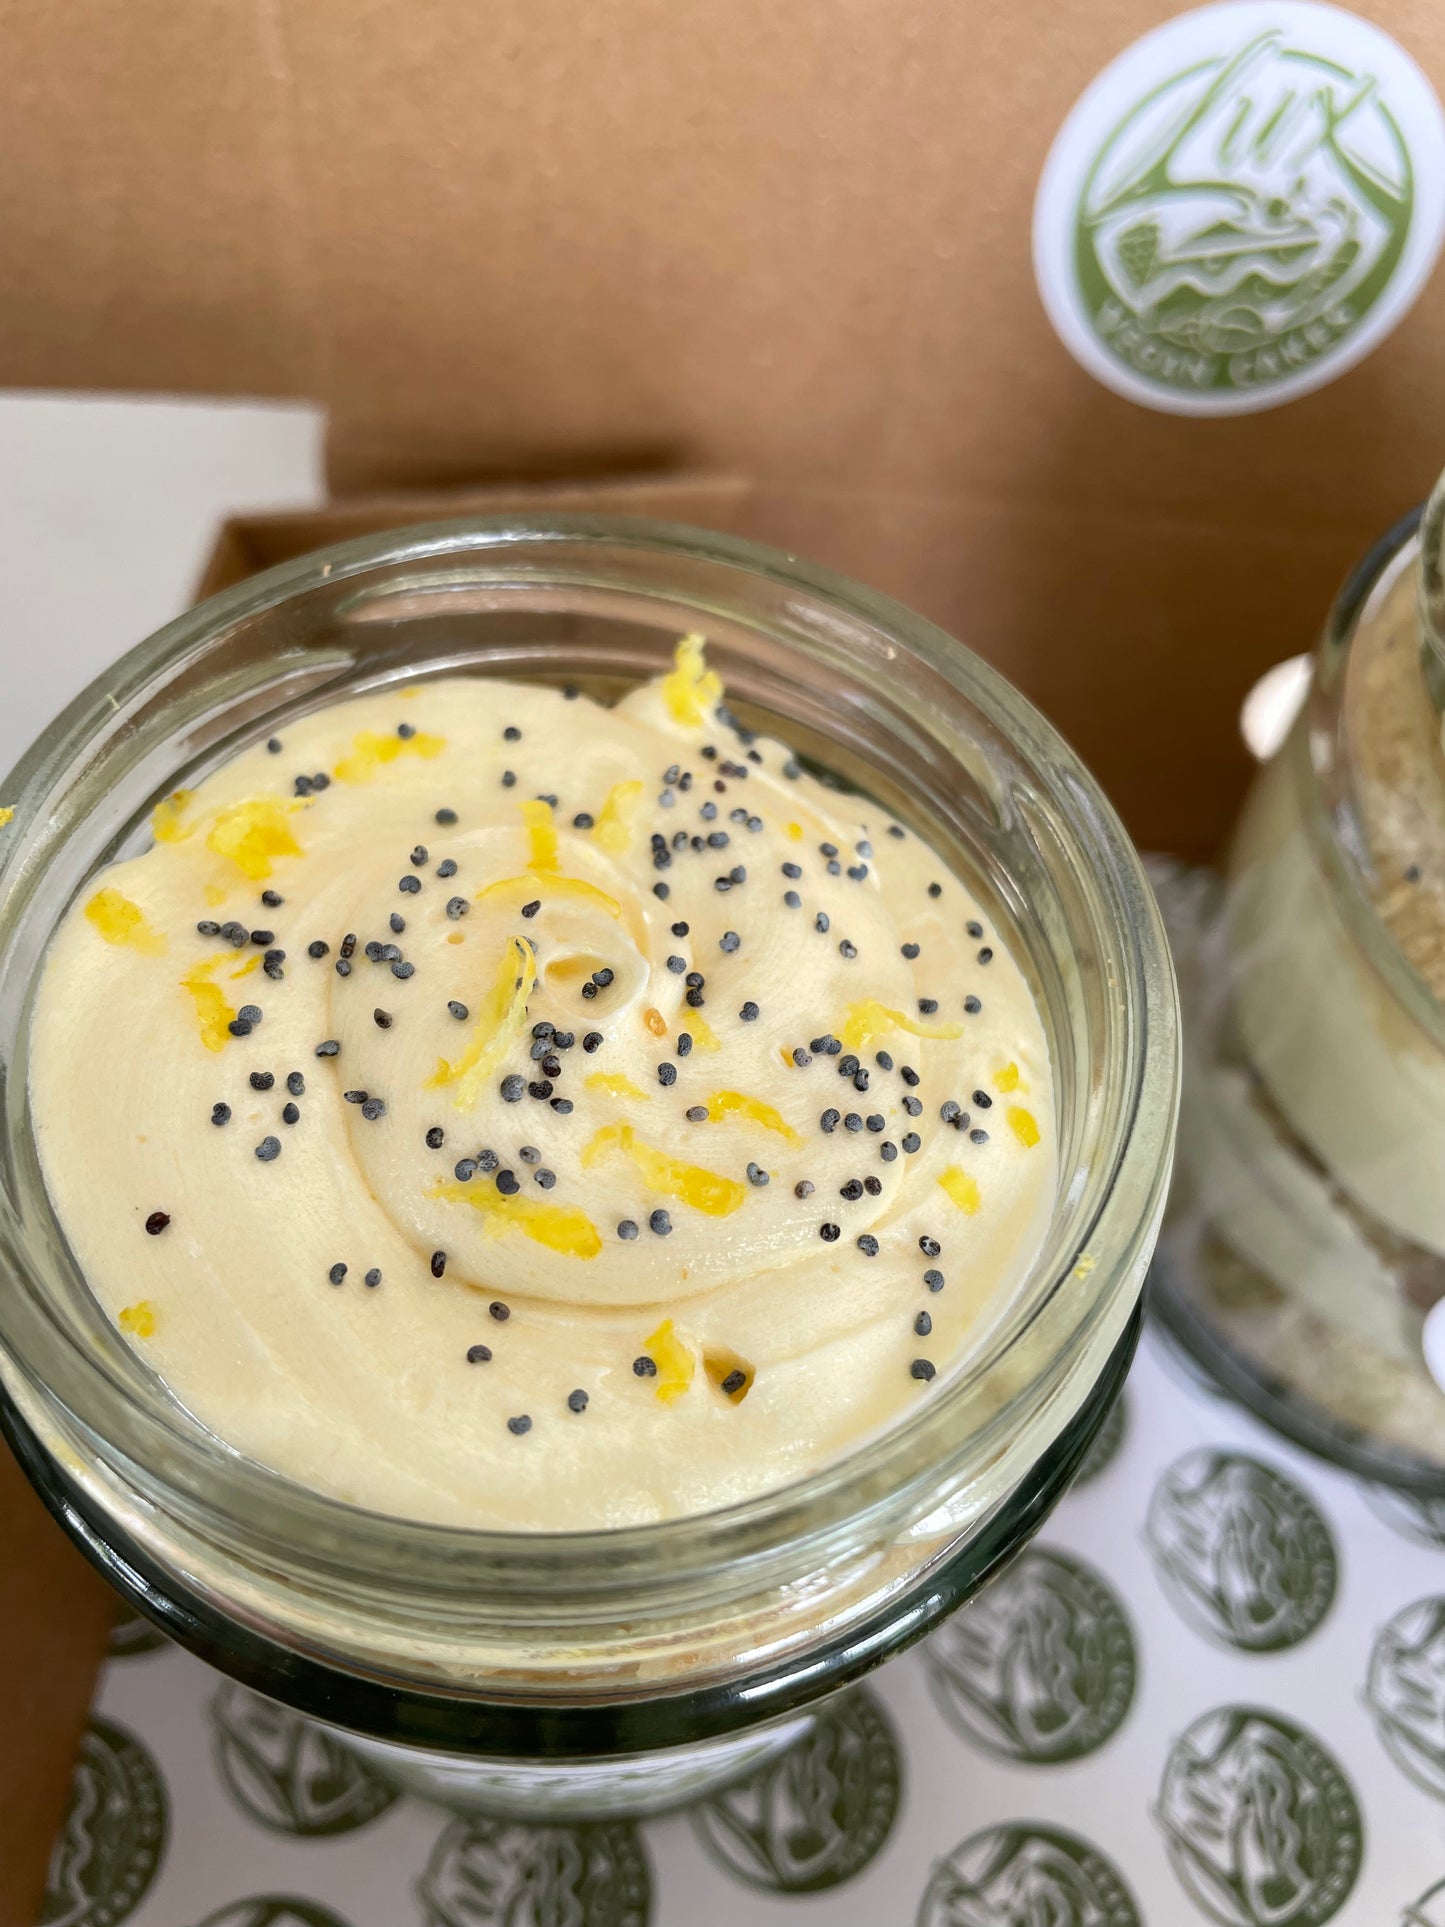 Lemon and Poppyseed Medium Cake Jars